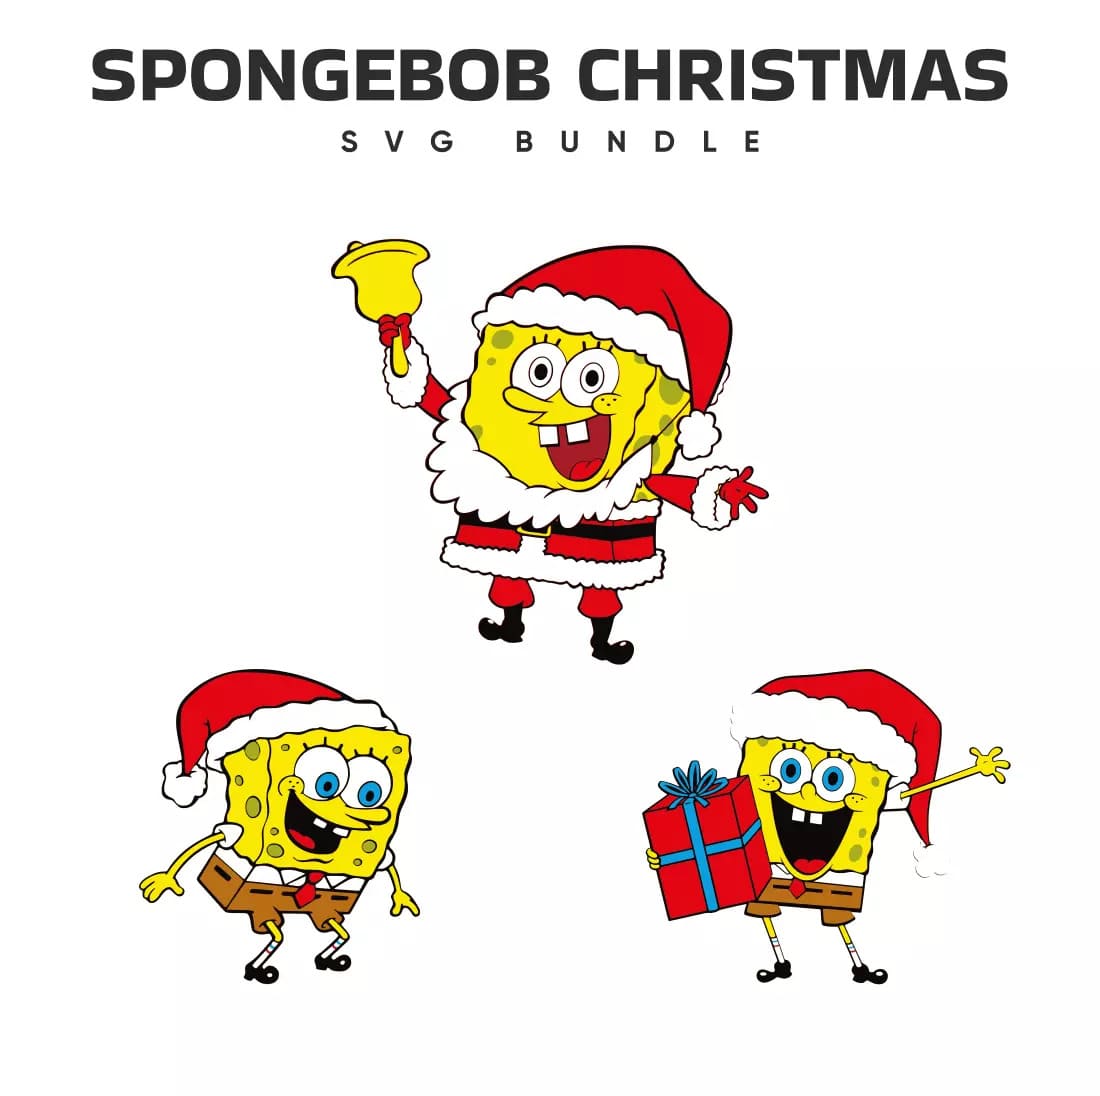 Spongebob Christmas SVG Bundle Preview.